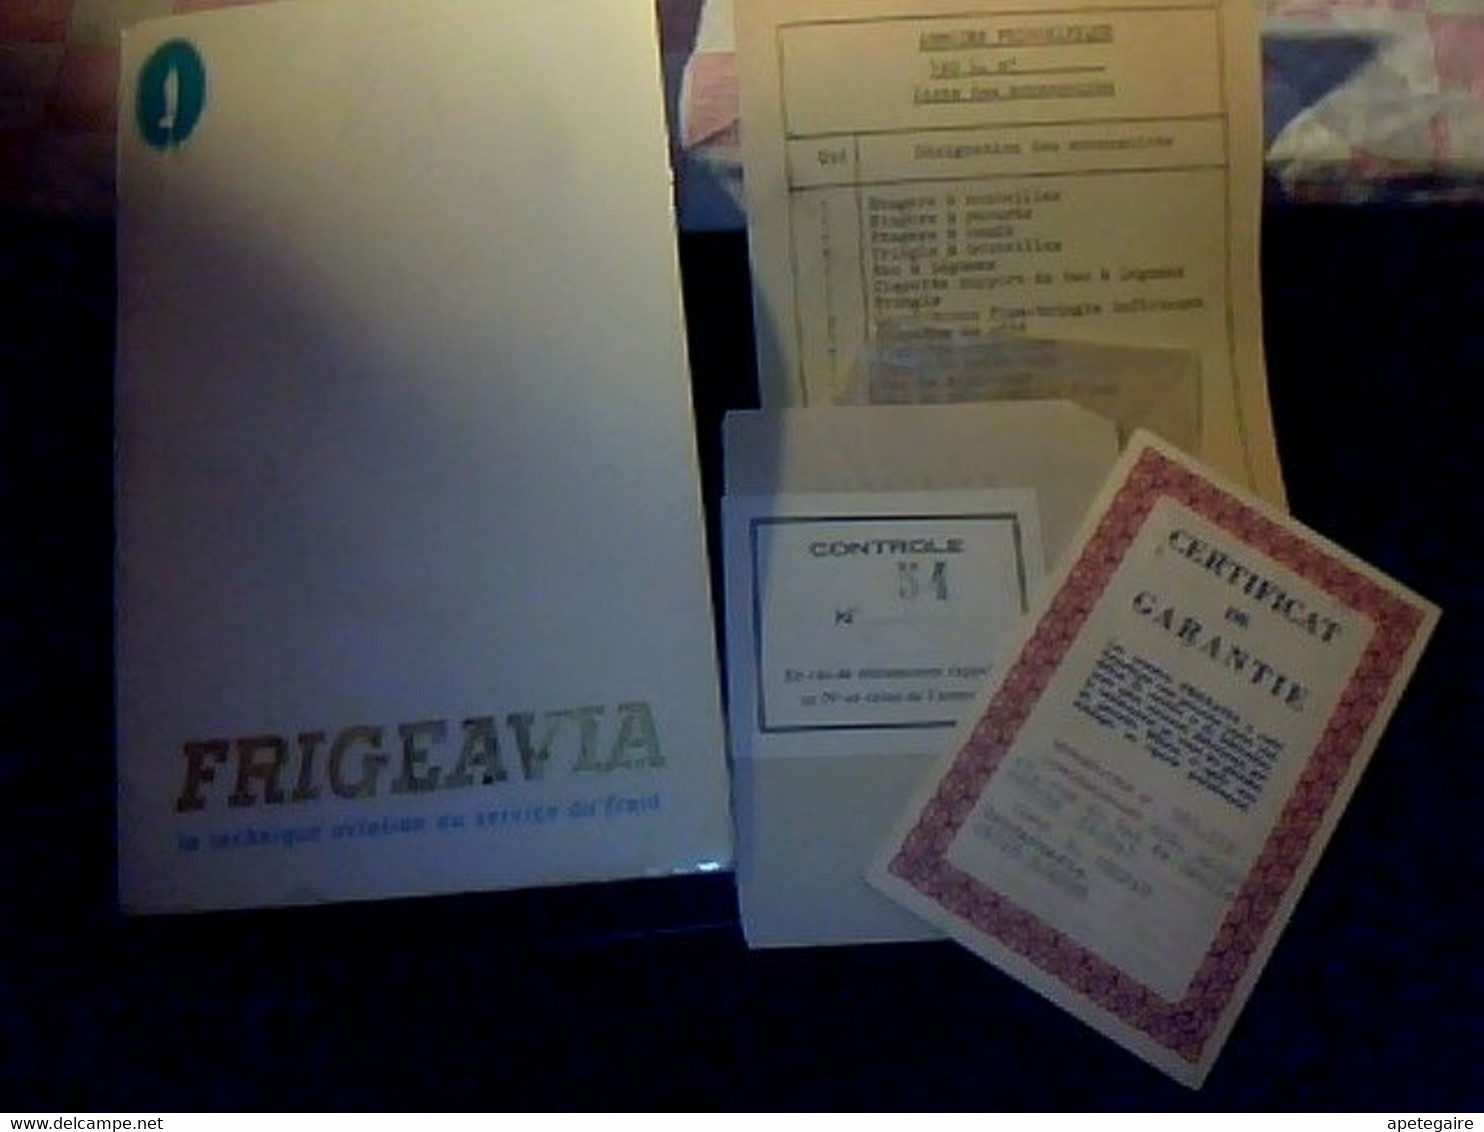 Réfrigérateurs Frigeavia Livret Technique Avec Recettes Plus Certifica De Garantie Année 1962 - Material Y Accesorios